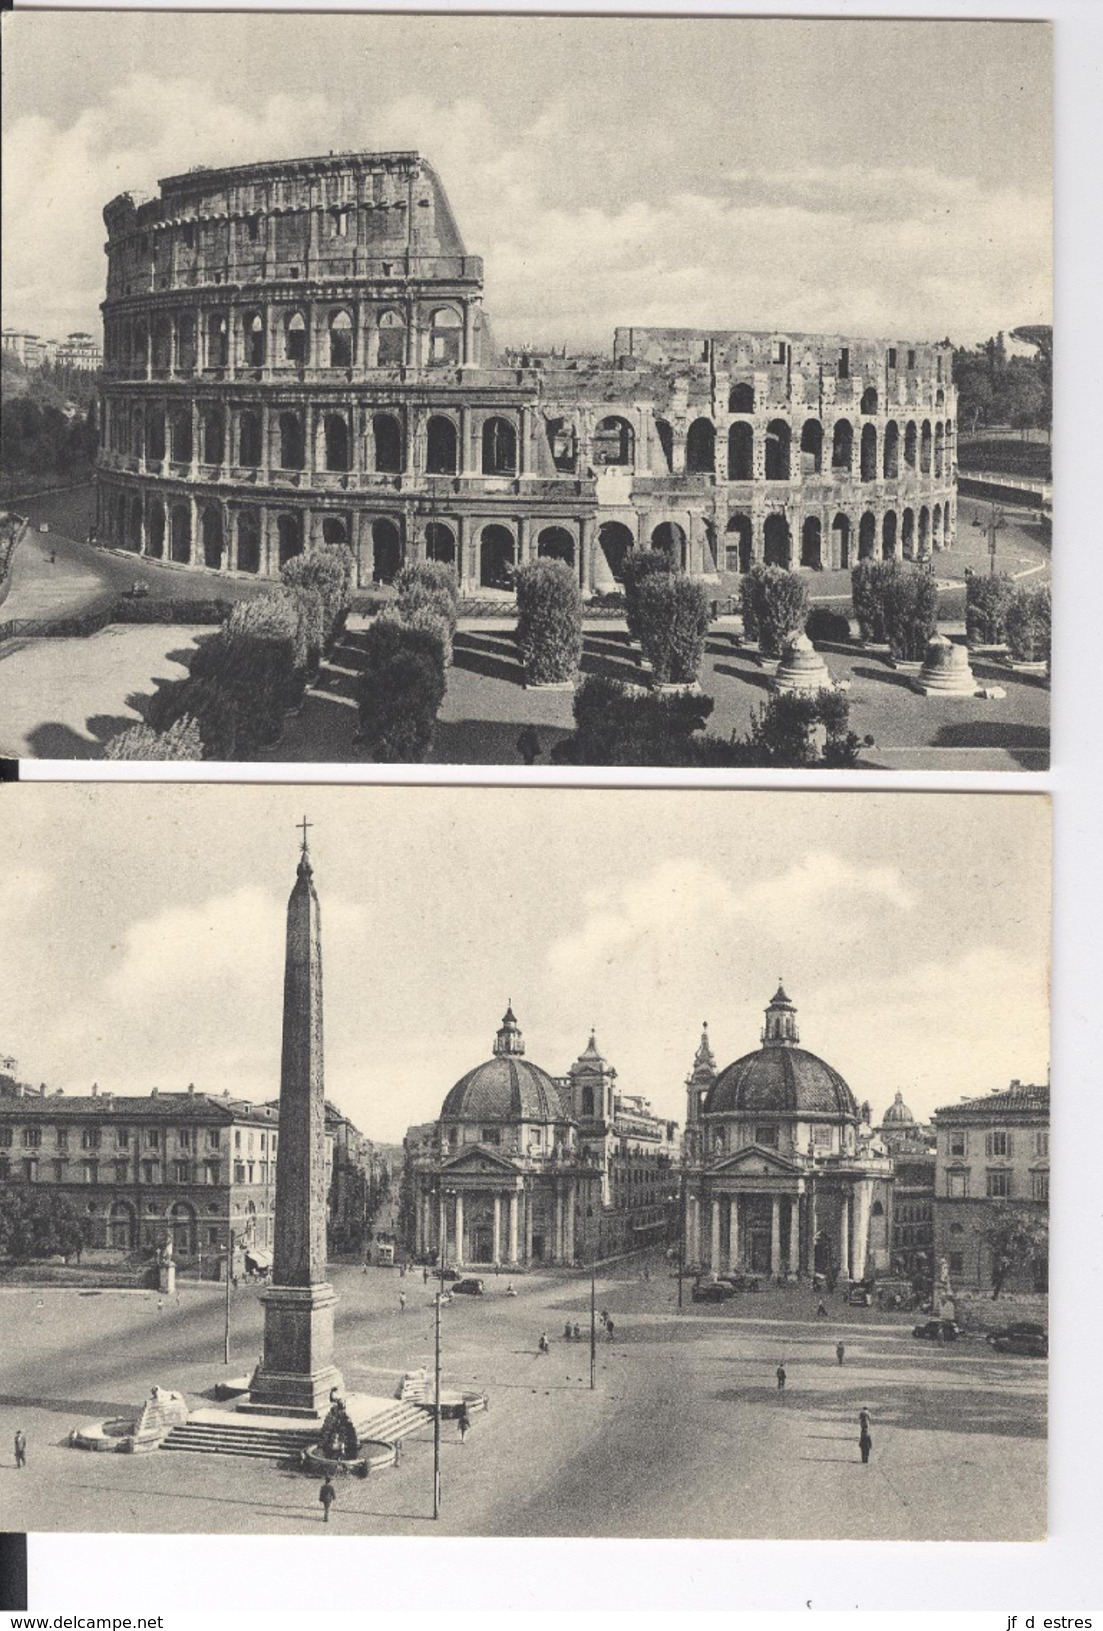 CP Roma Rome 14 cartes vers 1950 carton mat noir et blanc (une carte envoyée) Ediz Enrico Verdesi